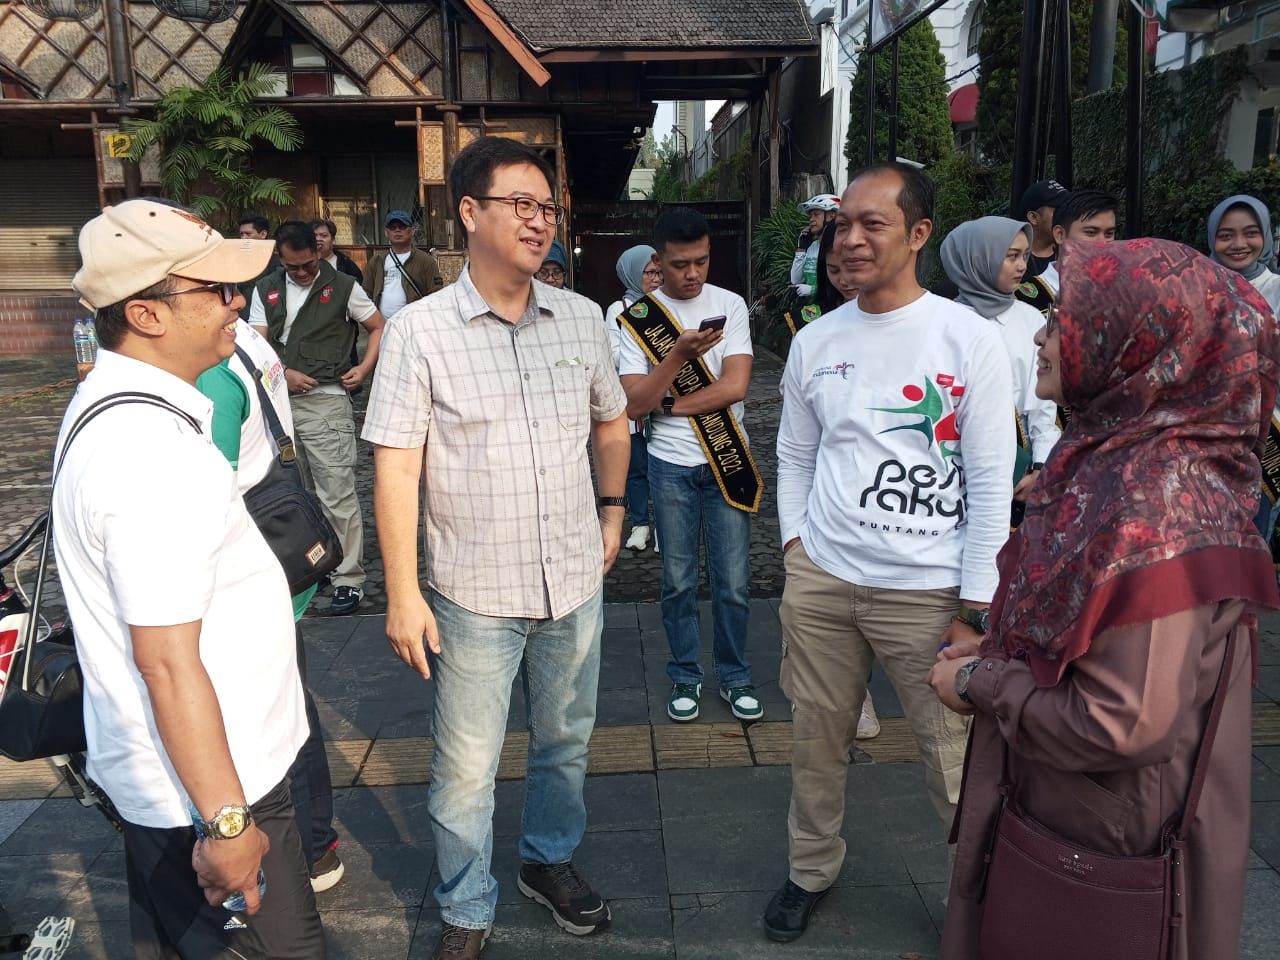  Kadisbudpar Kabupaten Bandung, Wawan Ahmad berkoordinasi bersama Kadisbupdar Kota Bandung, Arief Syaifudin di lokasi CFD Dago.